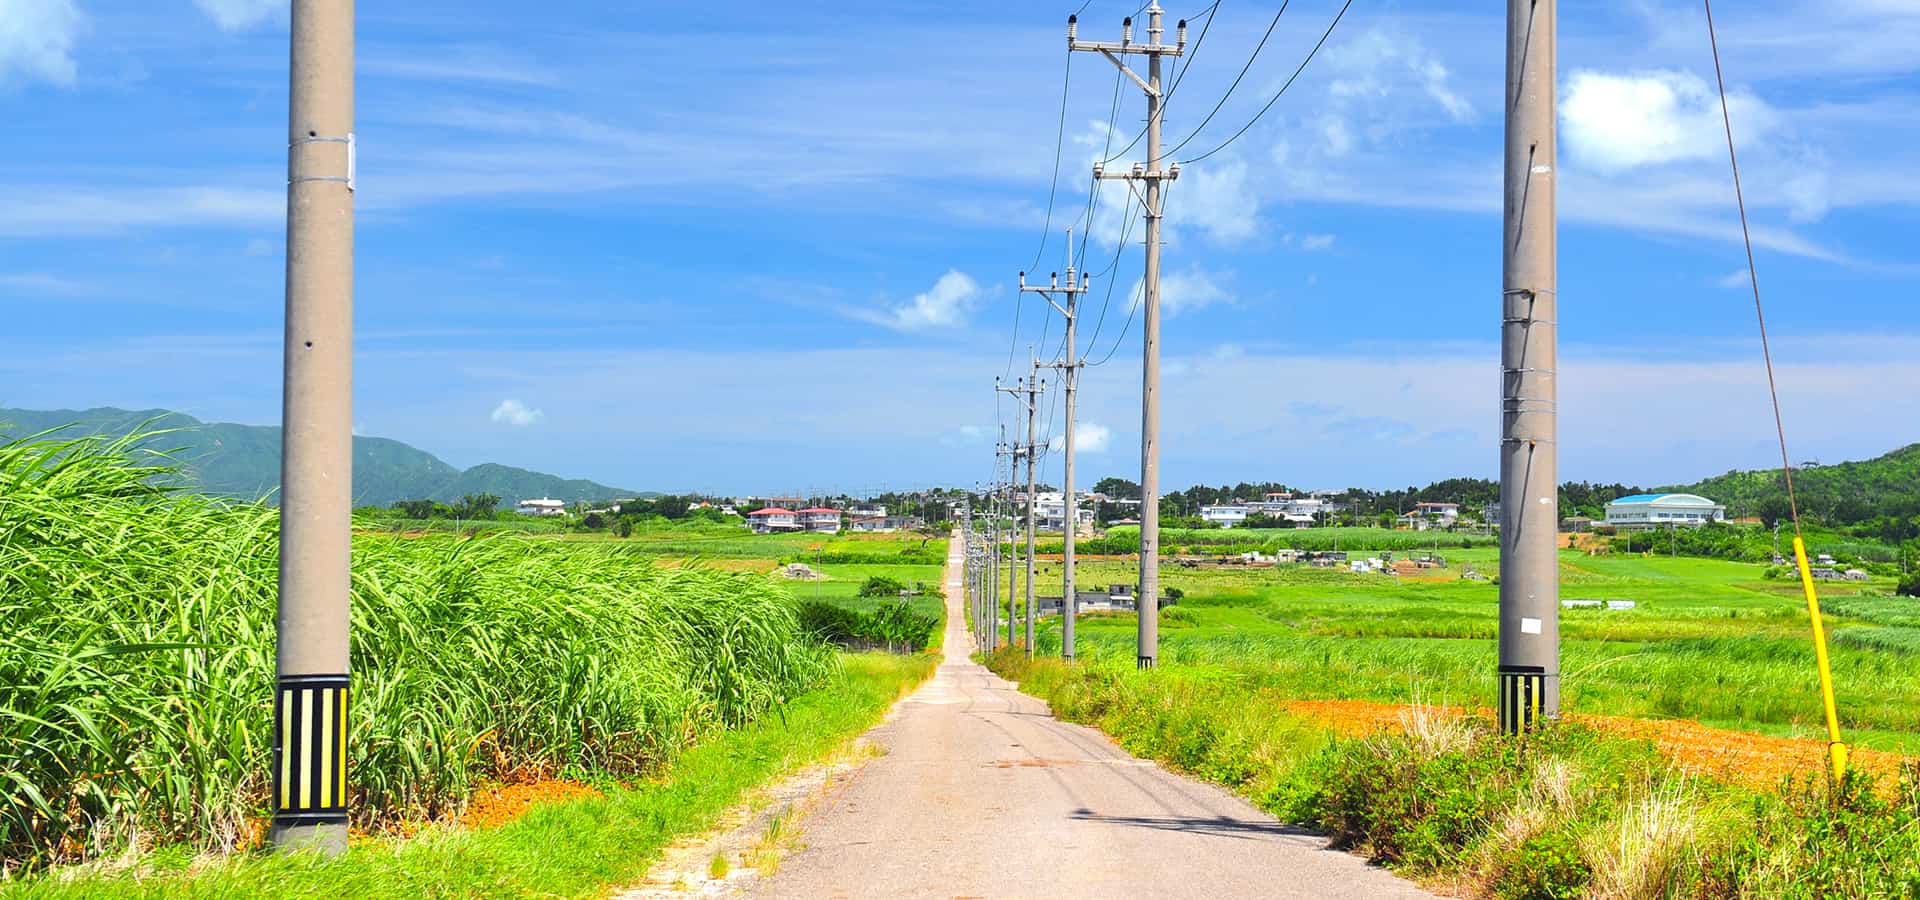 Sugar Road at Kohama in Okinawa